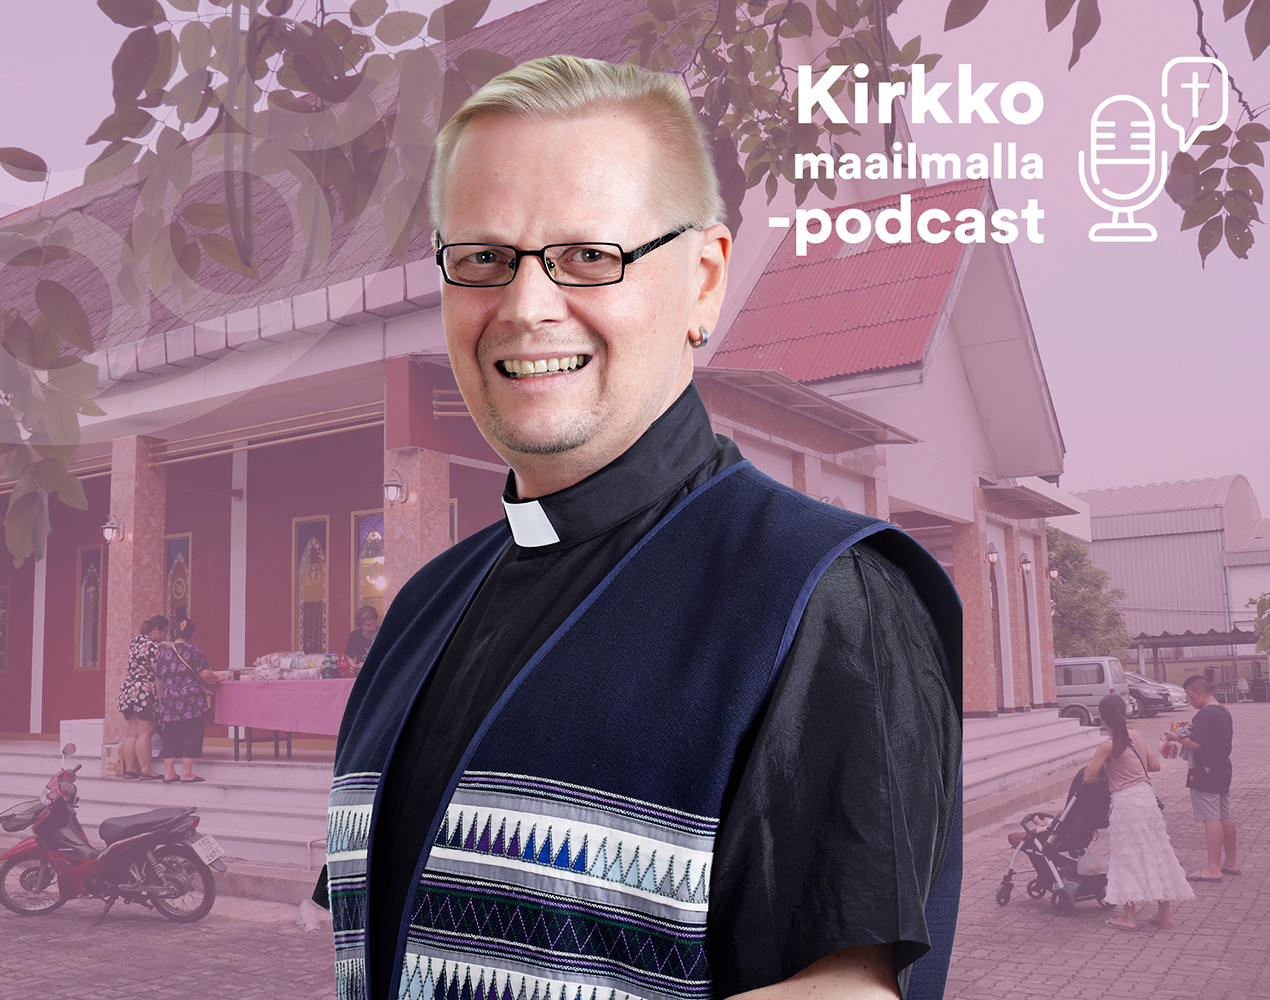 Kirkko maailmalla -podcastissa haastateltavana Jyrki Markkanen.